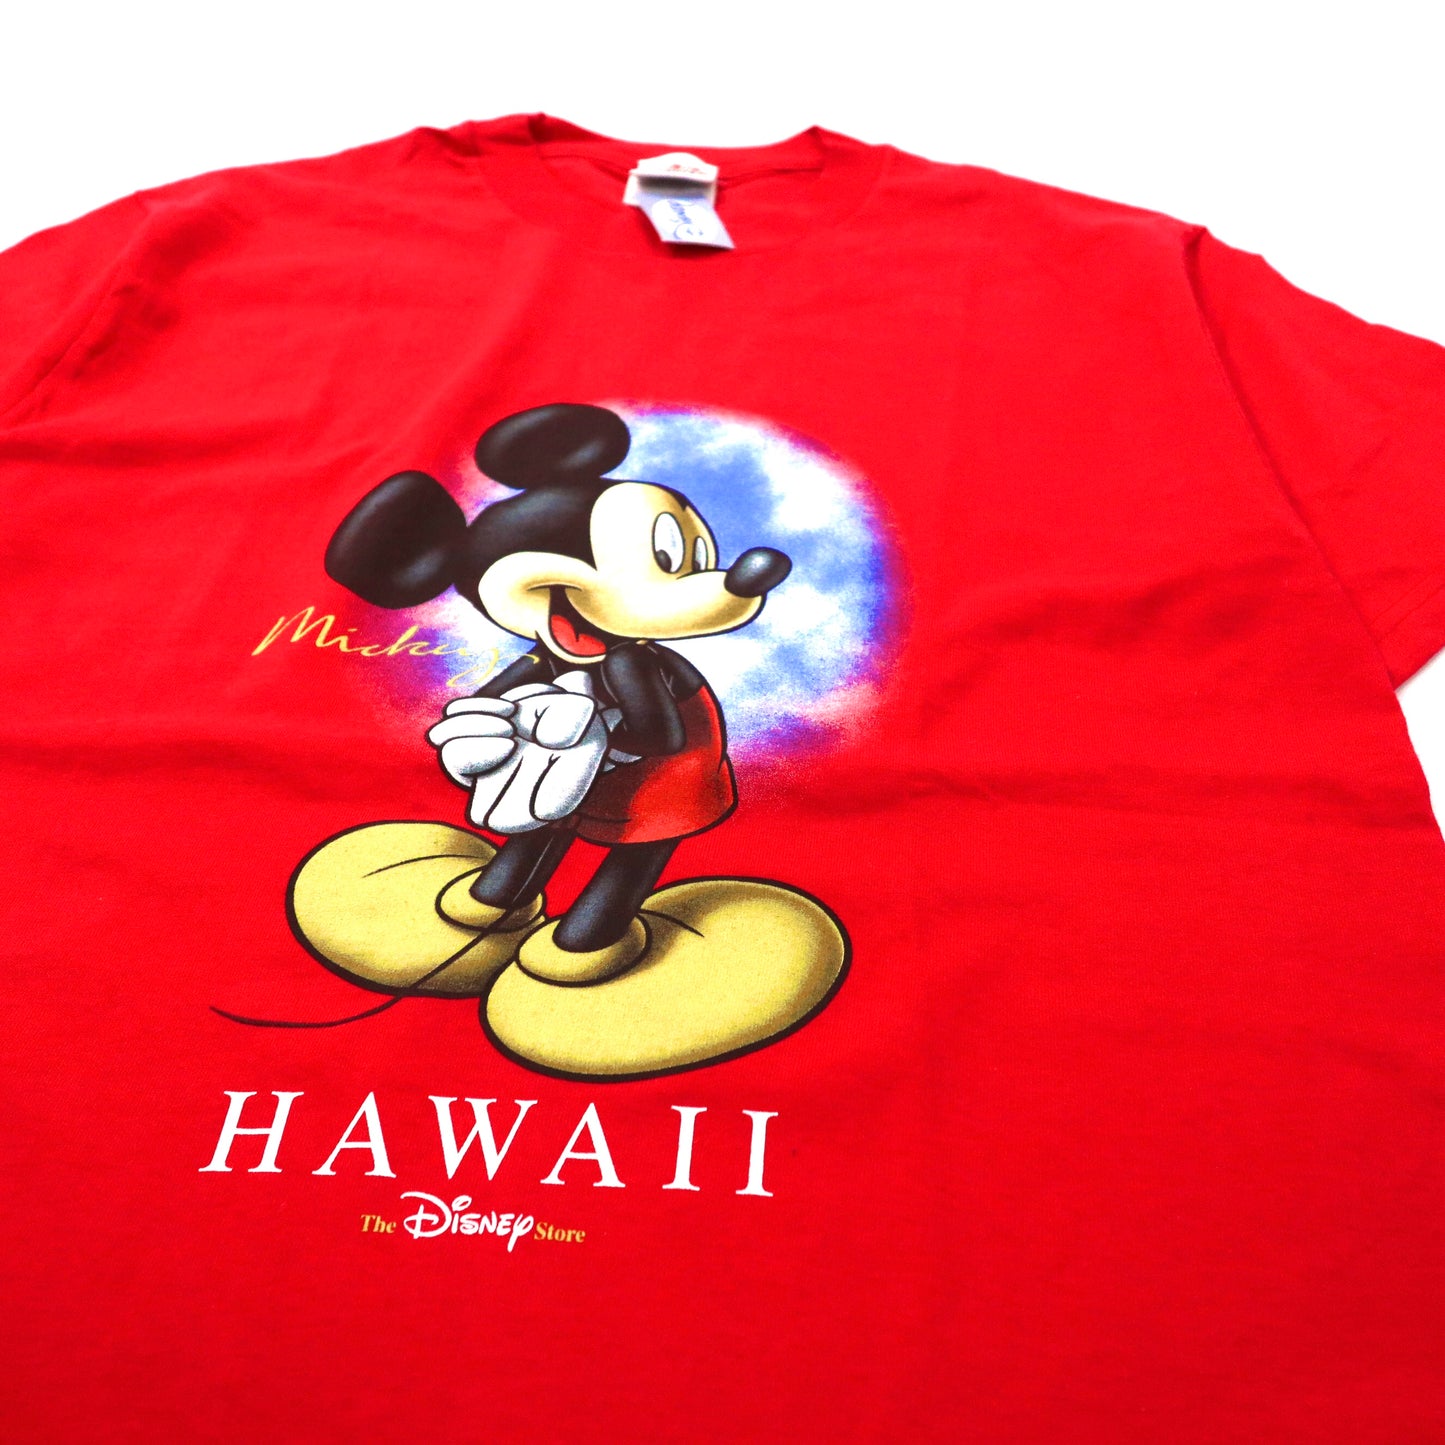 The Disney Store ビッグサイズ ミッキーマウス プリントTシャツ M レッド コットン HAWAII 90年代 メキシコ製 未使用